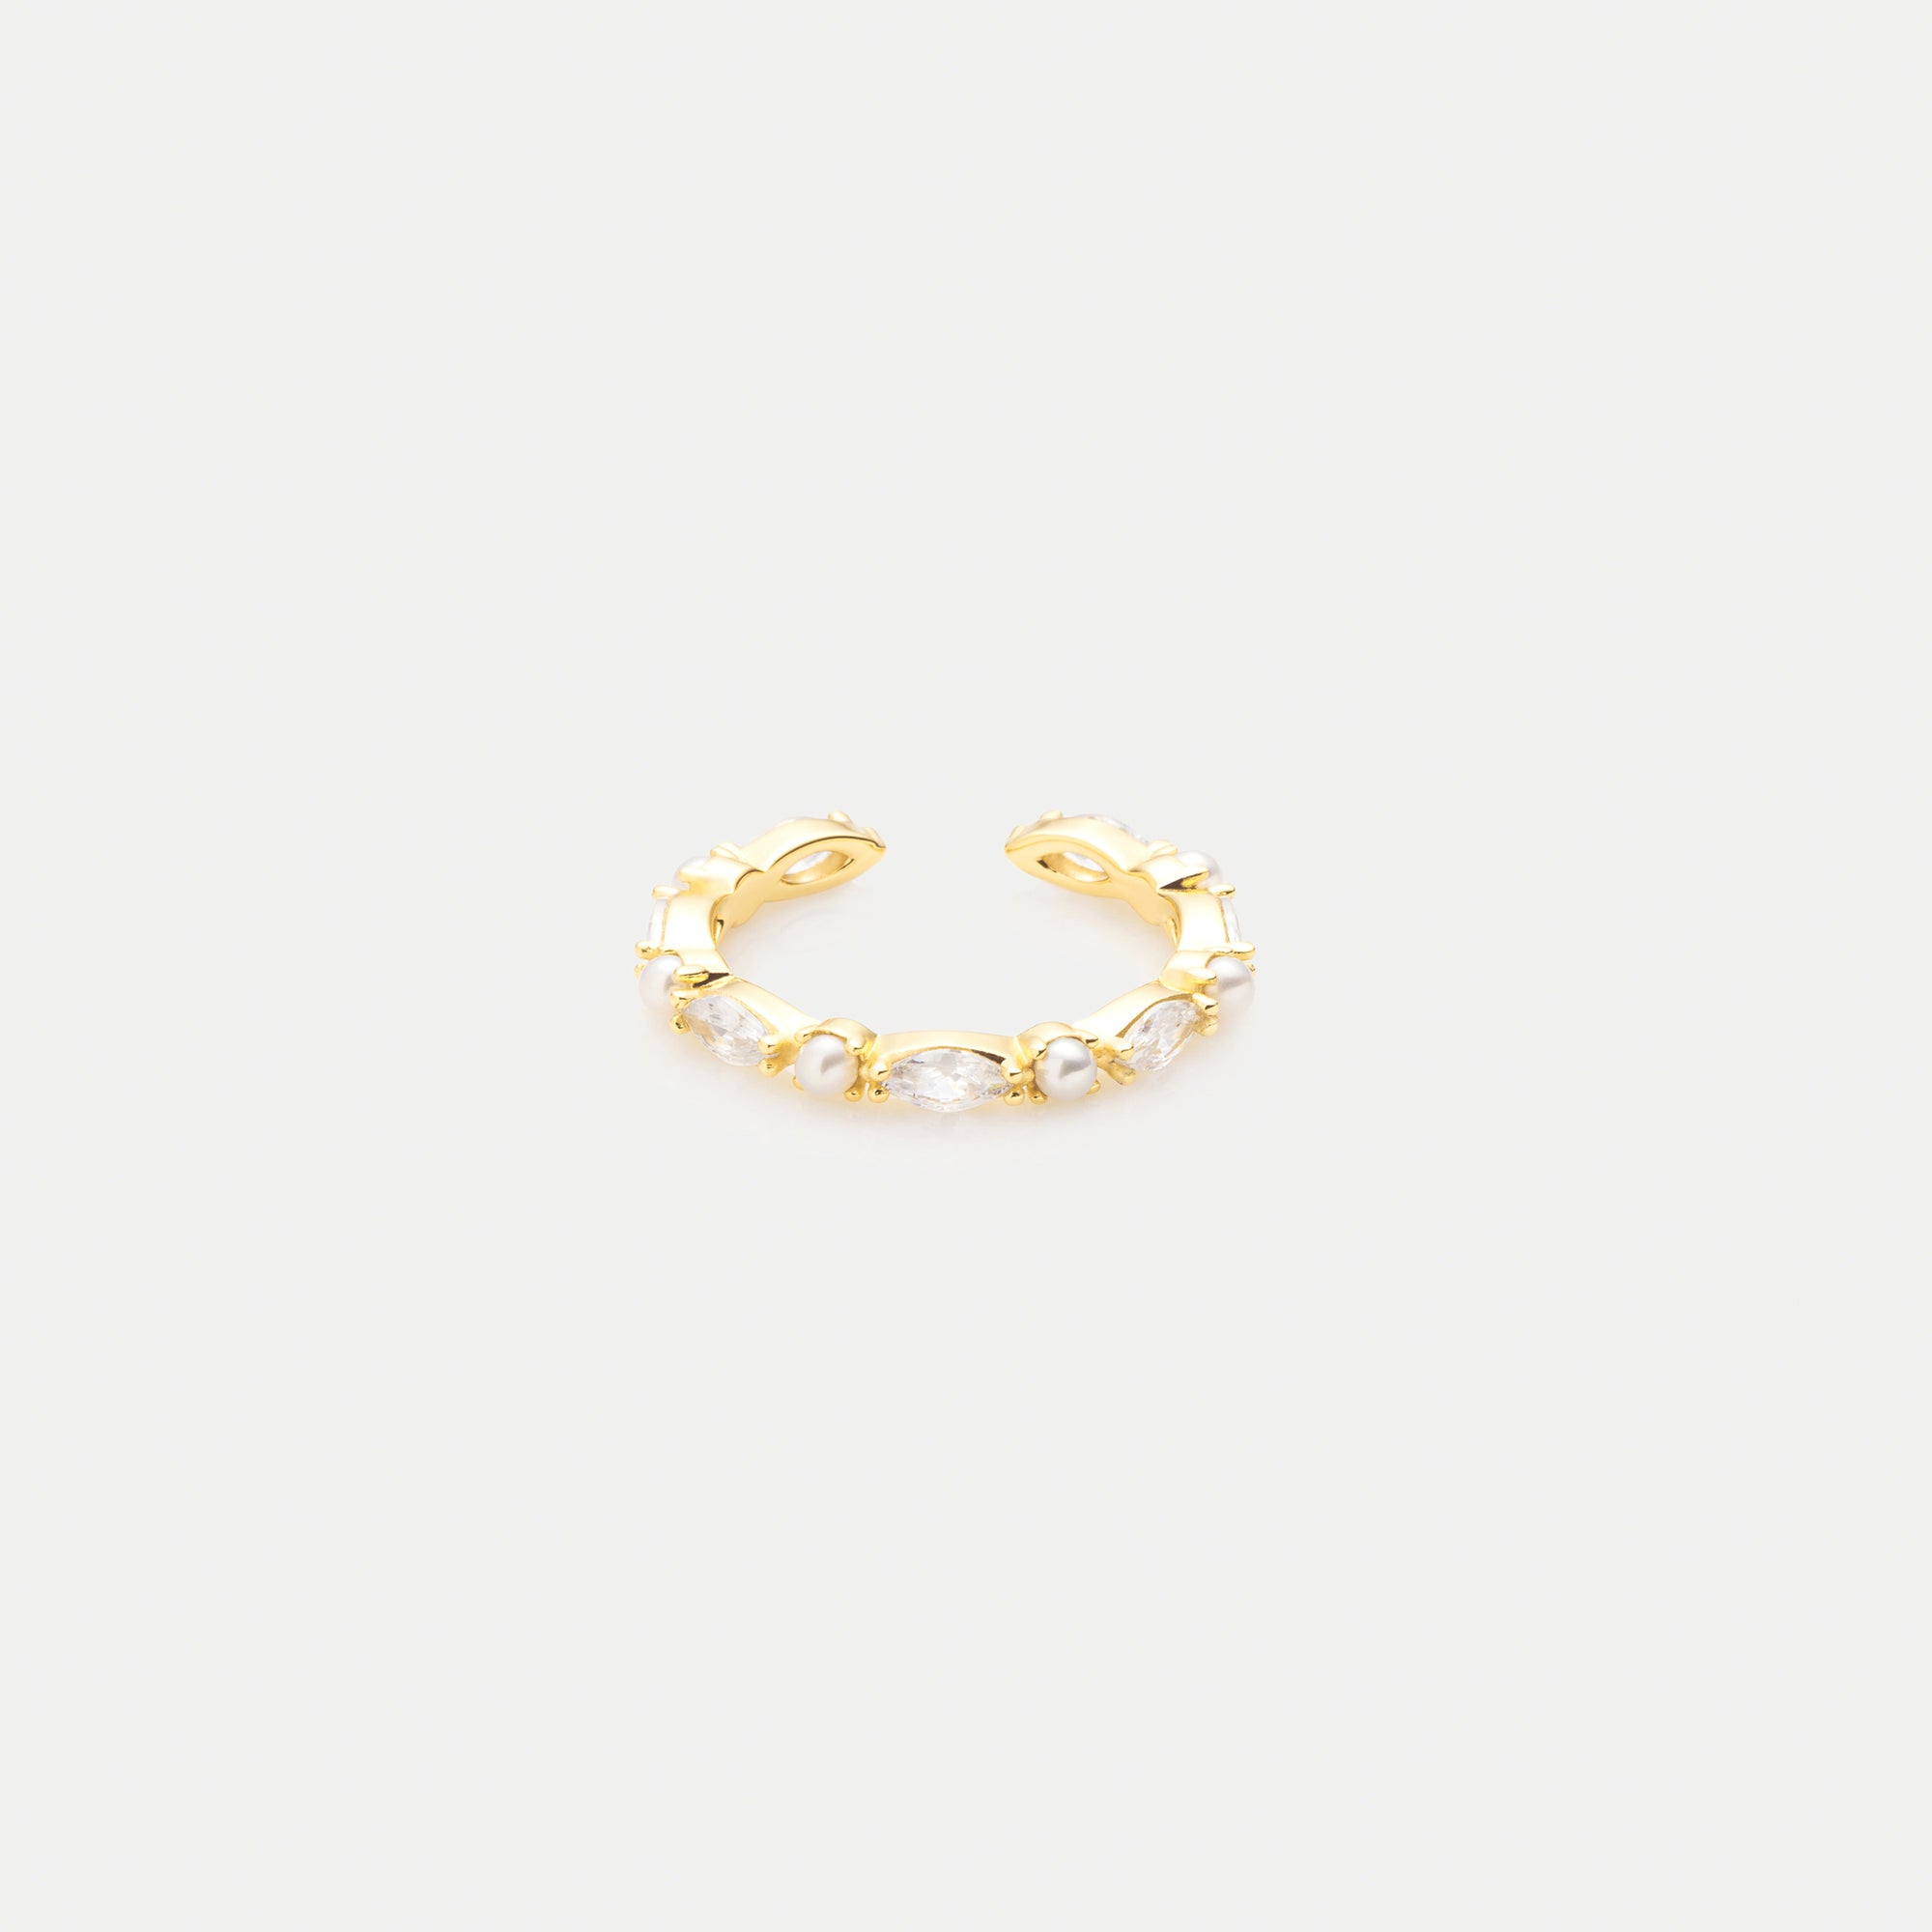 Mia 珍珠造型鑽戒指 / 單支